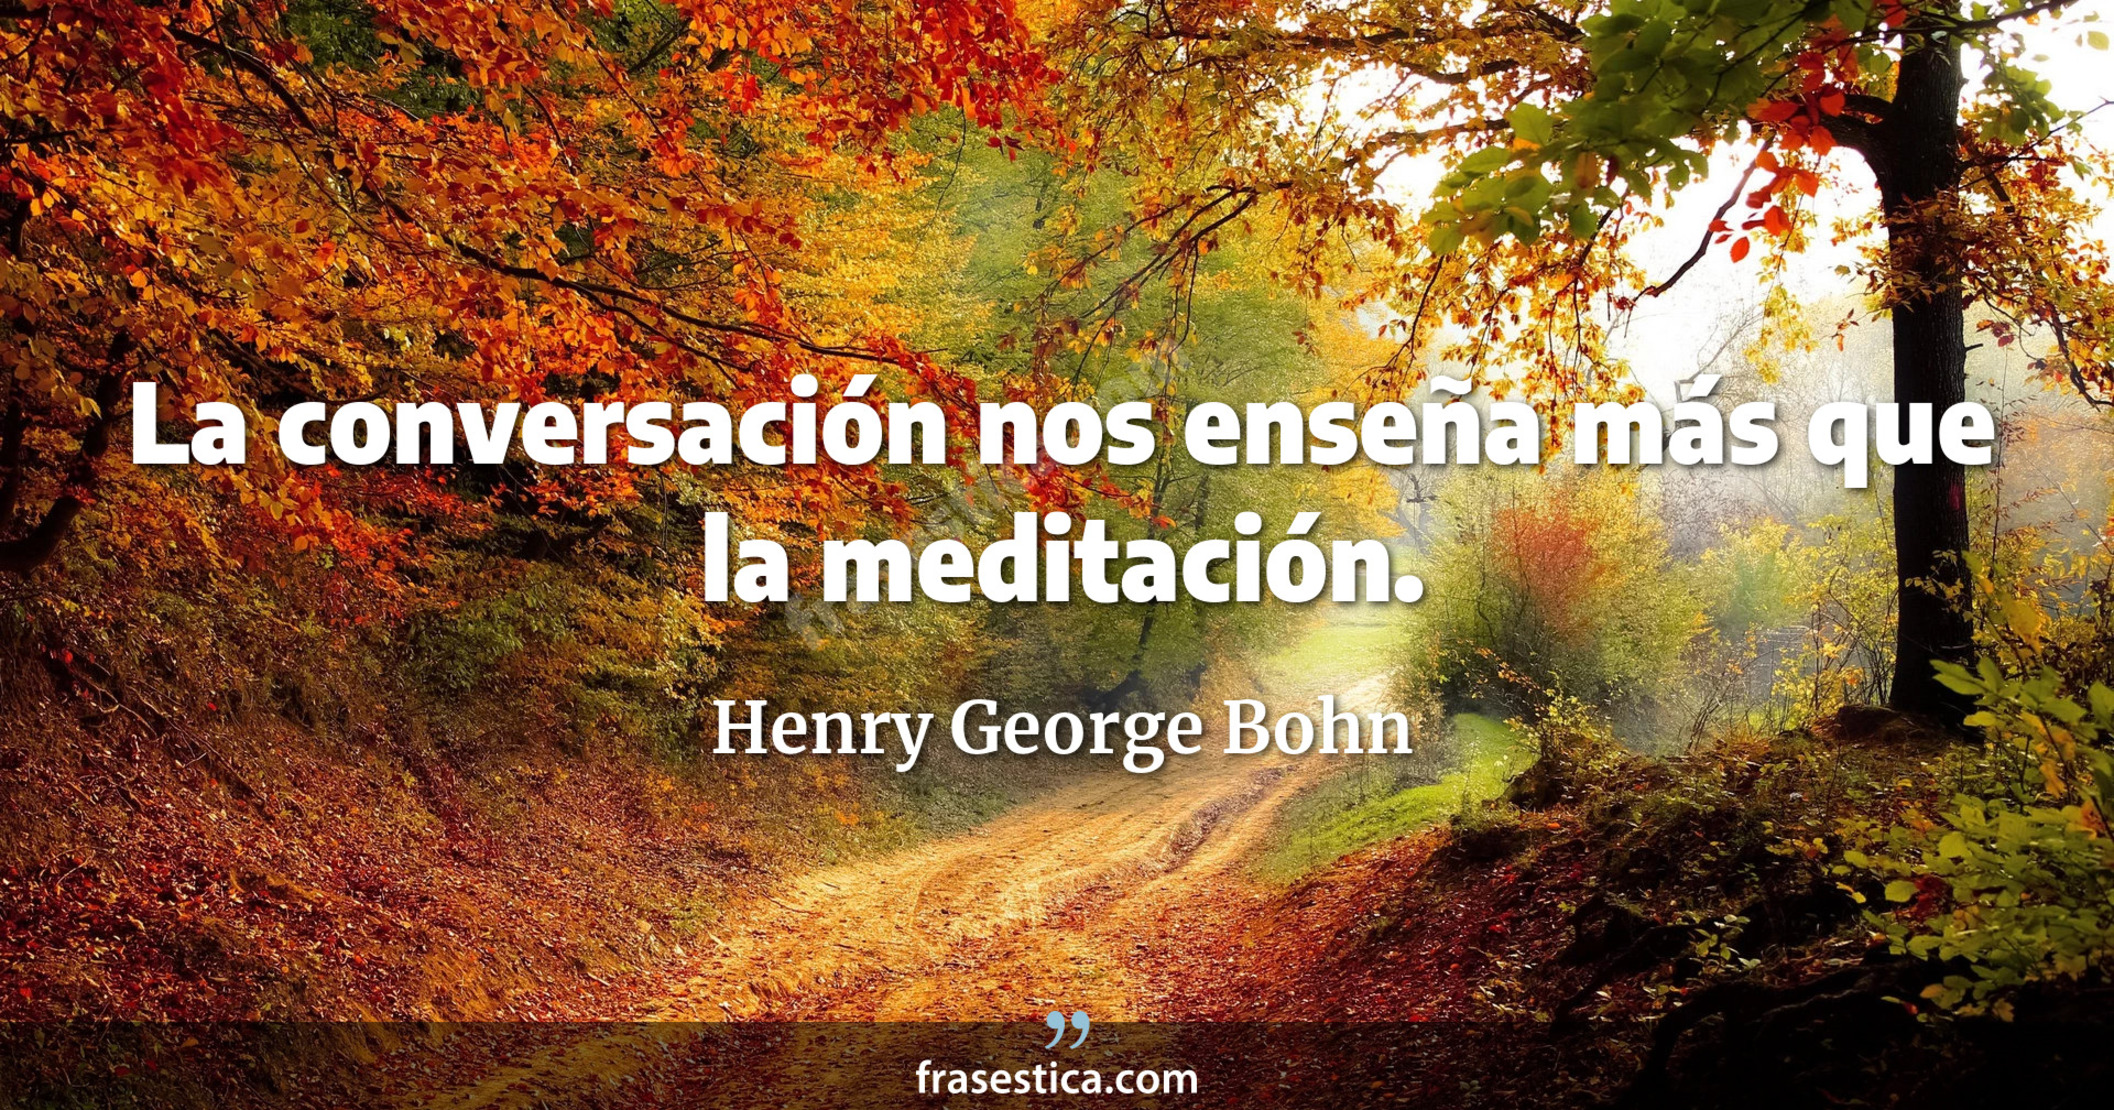 La conversación nos enseña más que la meditación. - Henry George Bohn